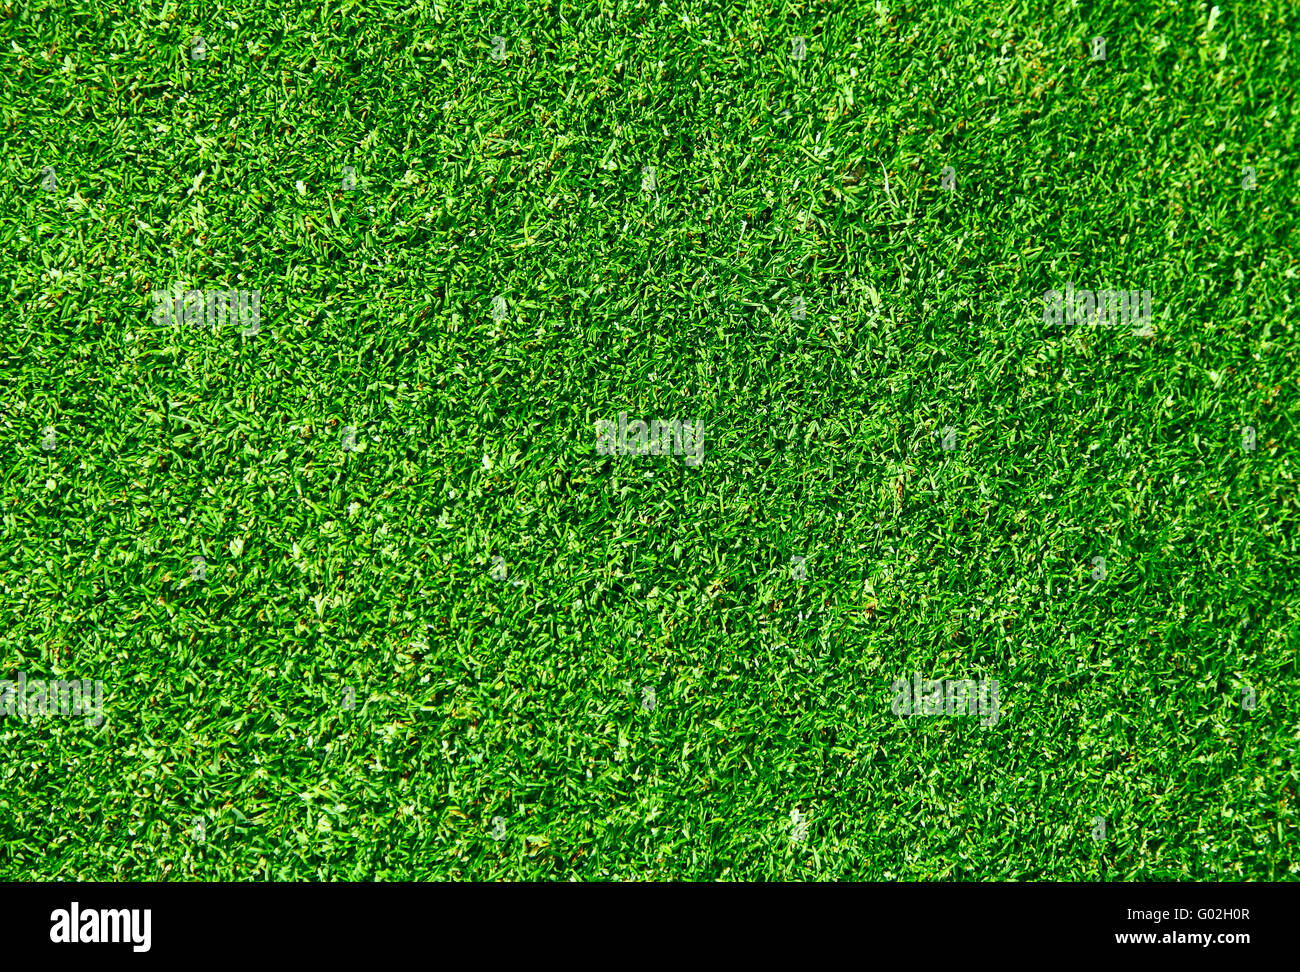 Die echten grünen Rasen-Hintergrund - Golfplatz Stockfoto